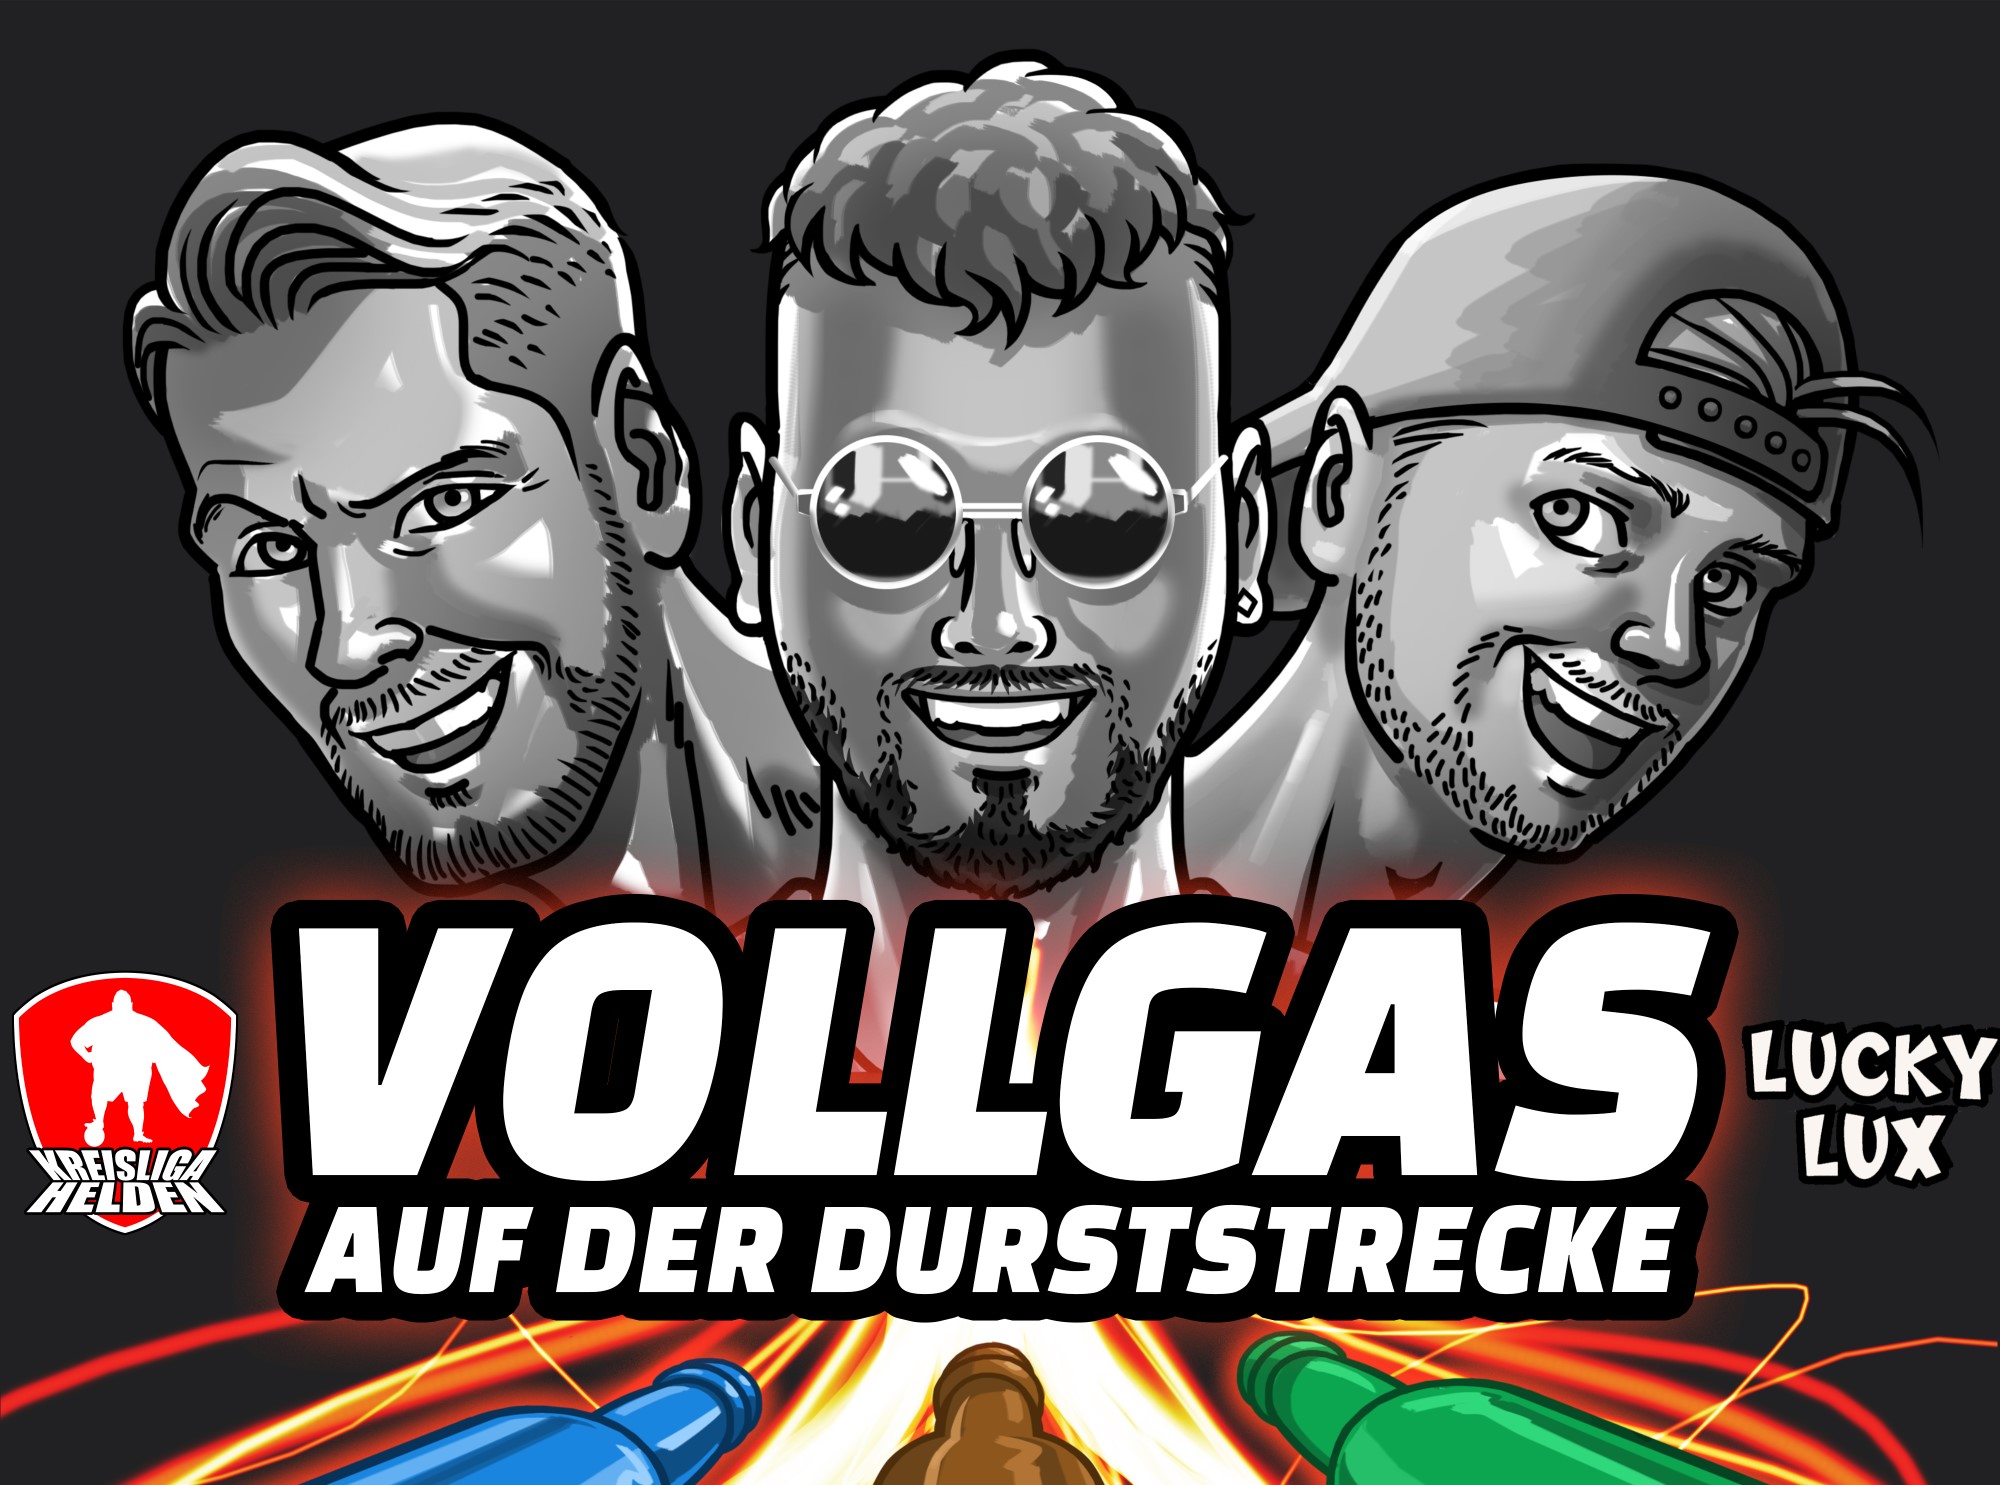 „Vollgas auf der Durststrecke“: Neue Single von Kreisligahelden feat. Lucky Lux